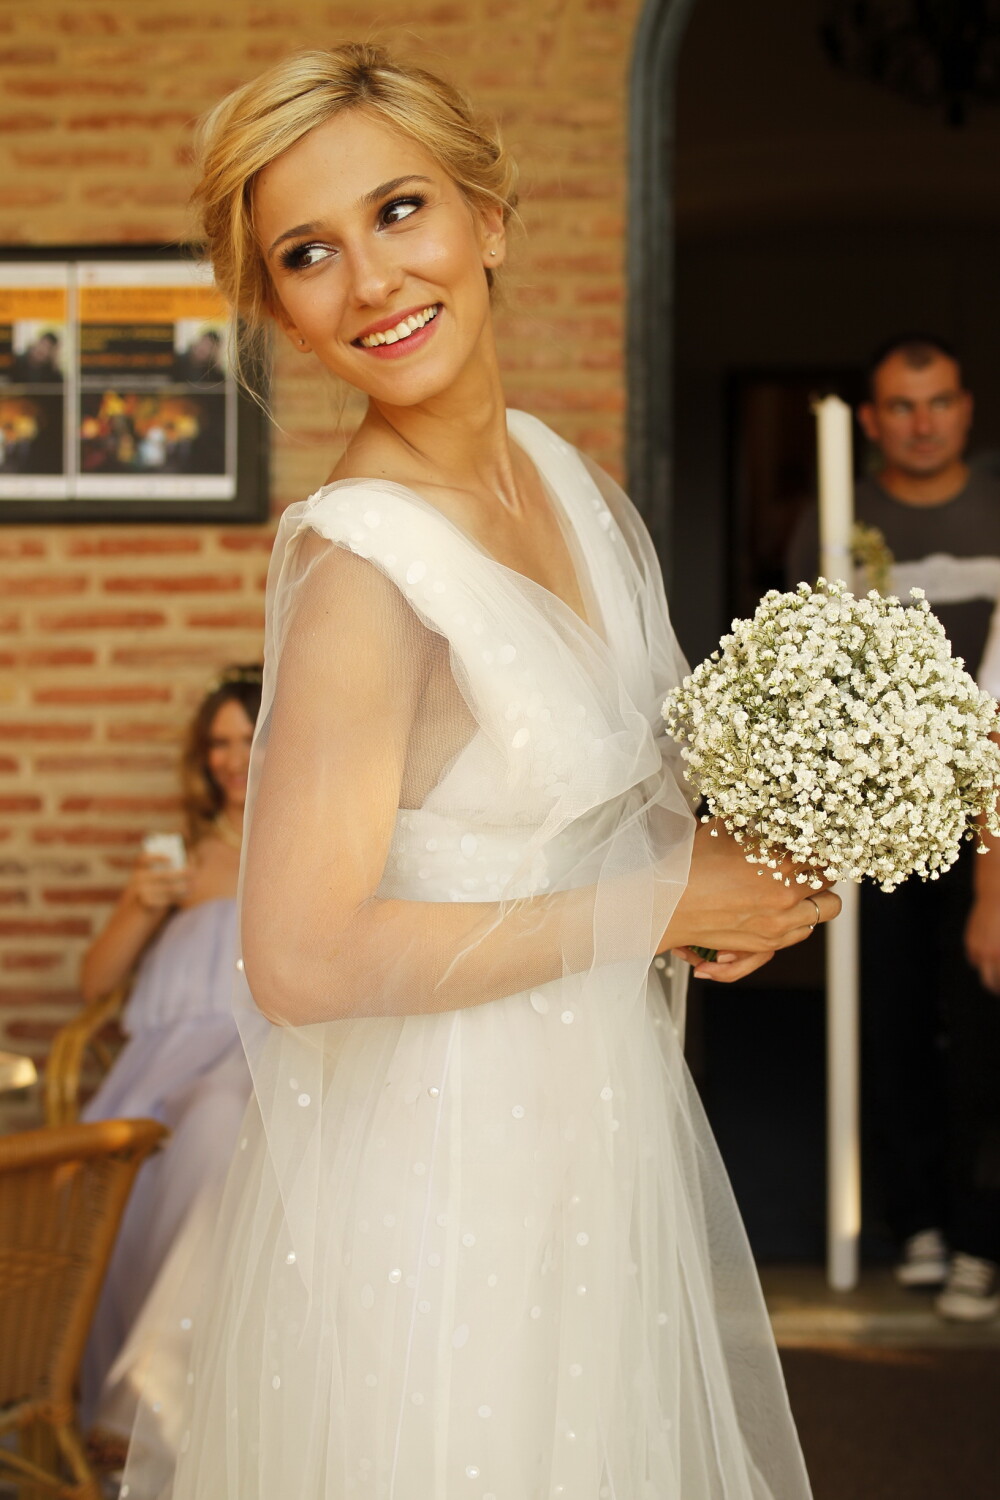 Cel mai emotionant moment de la nunta Danei Rogoz cu Radu Dragomir. FOTO - Imaginea 4